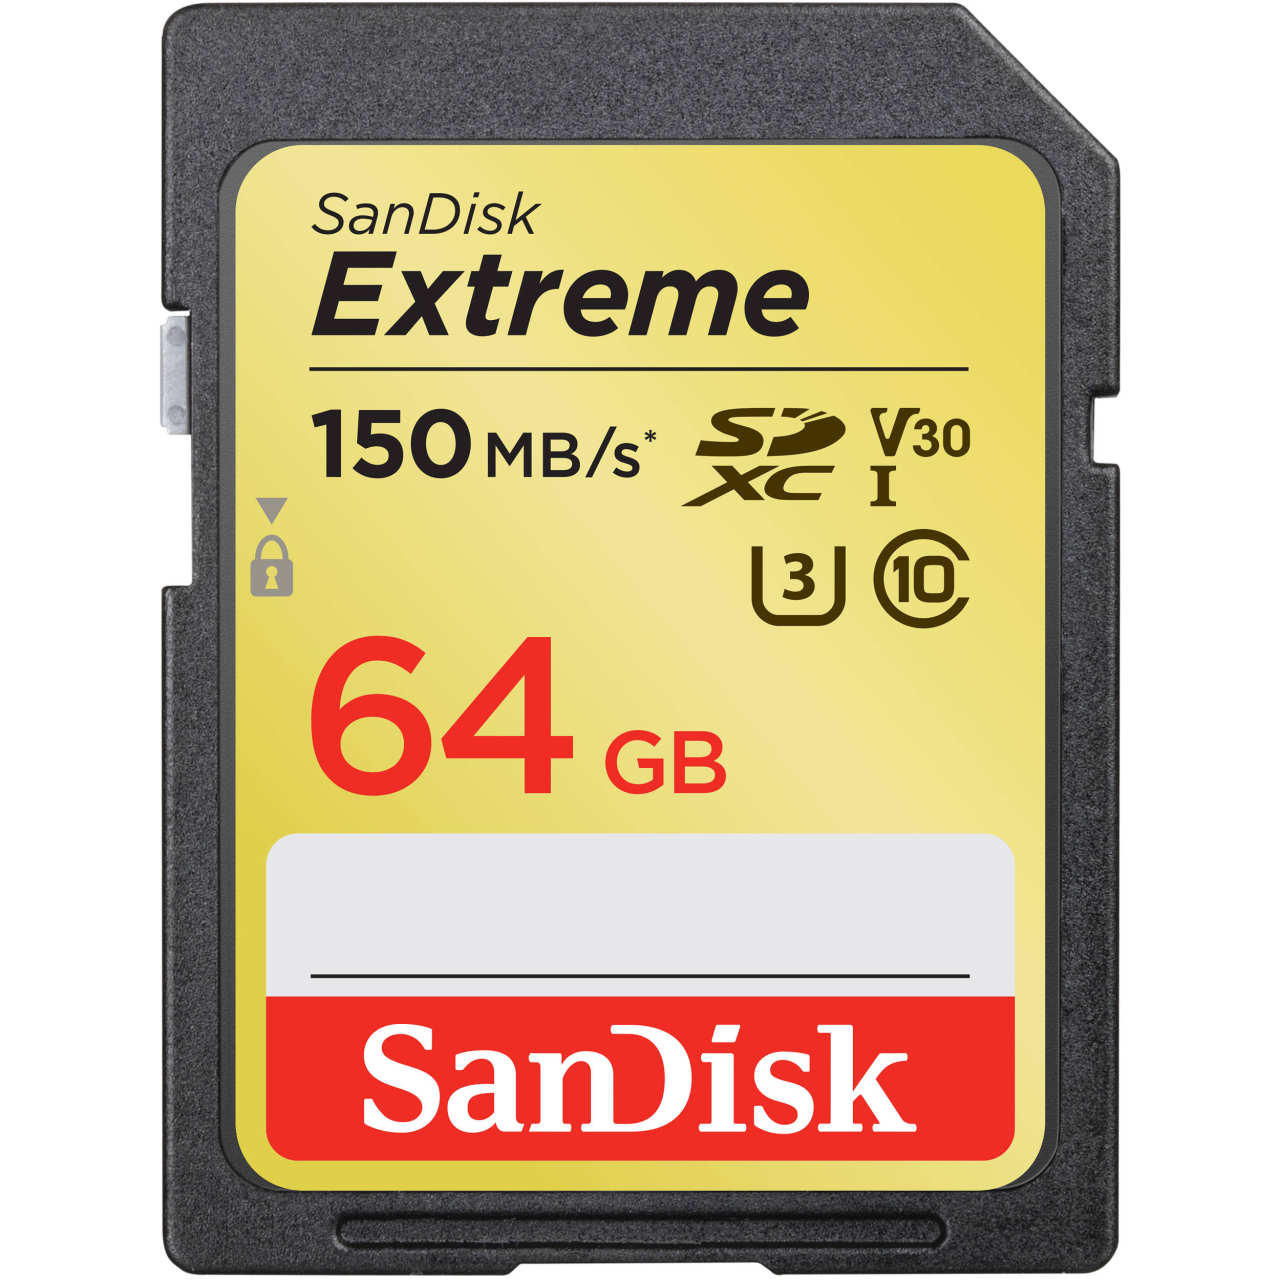  کارت حافظه SDXC سن دیسک مدل Extreme V30 کلاس 10 استاندارد UHS-1 U3 سرعت 150mbps ظرفیت 64 گیگابایت